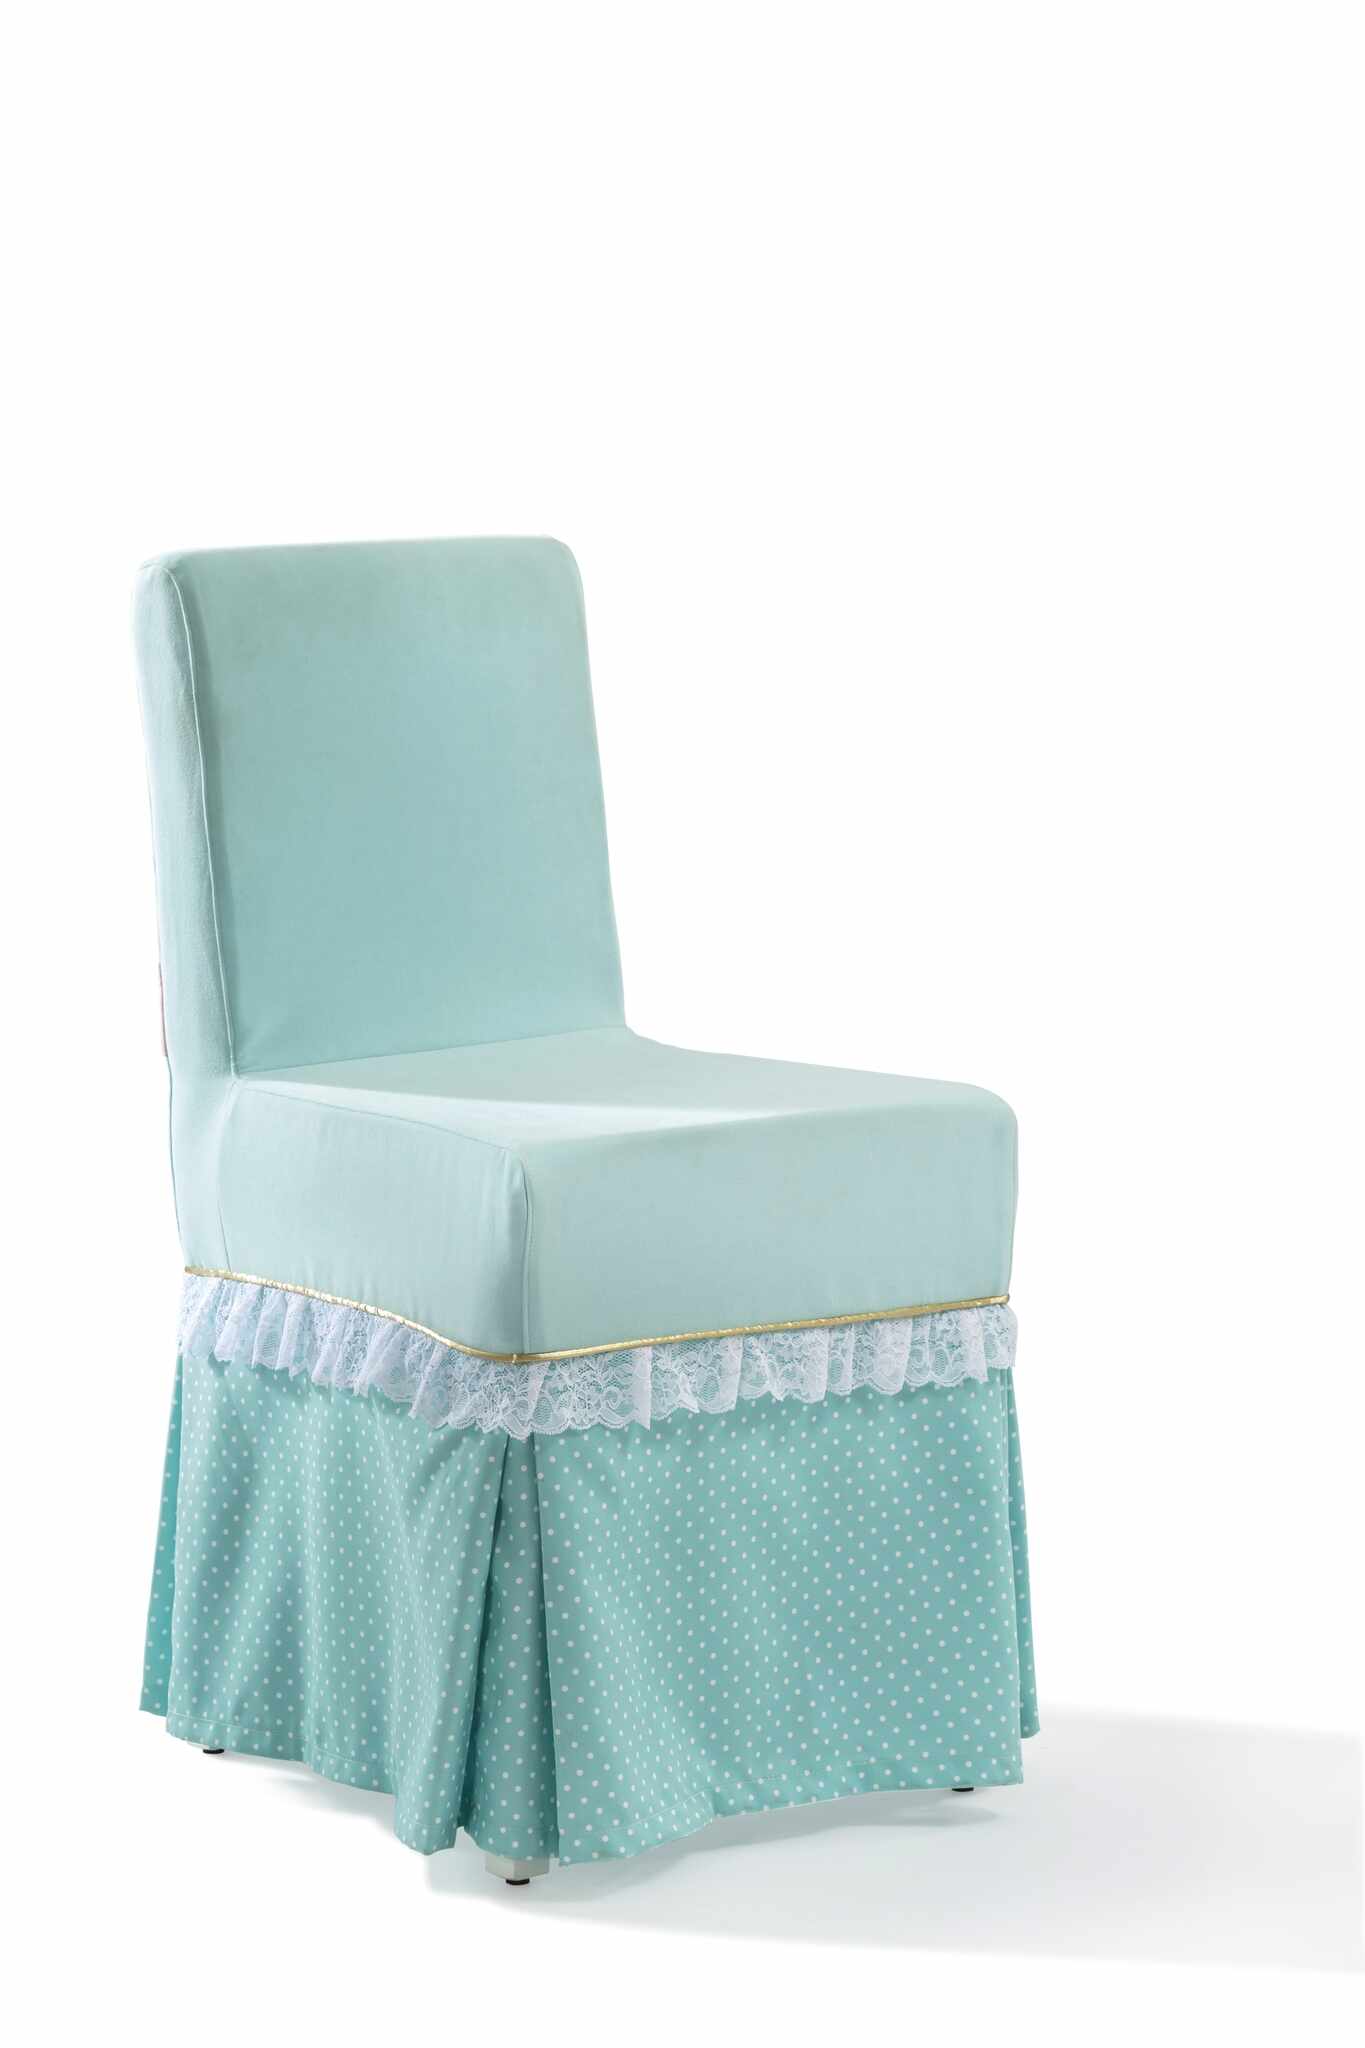 Scaun pentru copii, tapitat cu stofa cu picioare din lemn Summer Paradise Mint, l45xA52xH87 cm